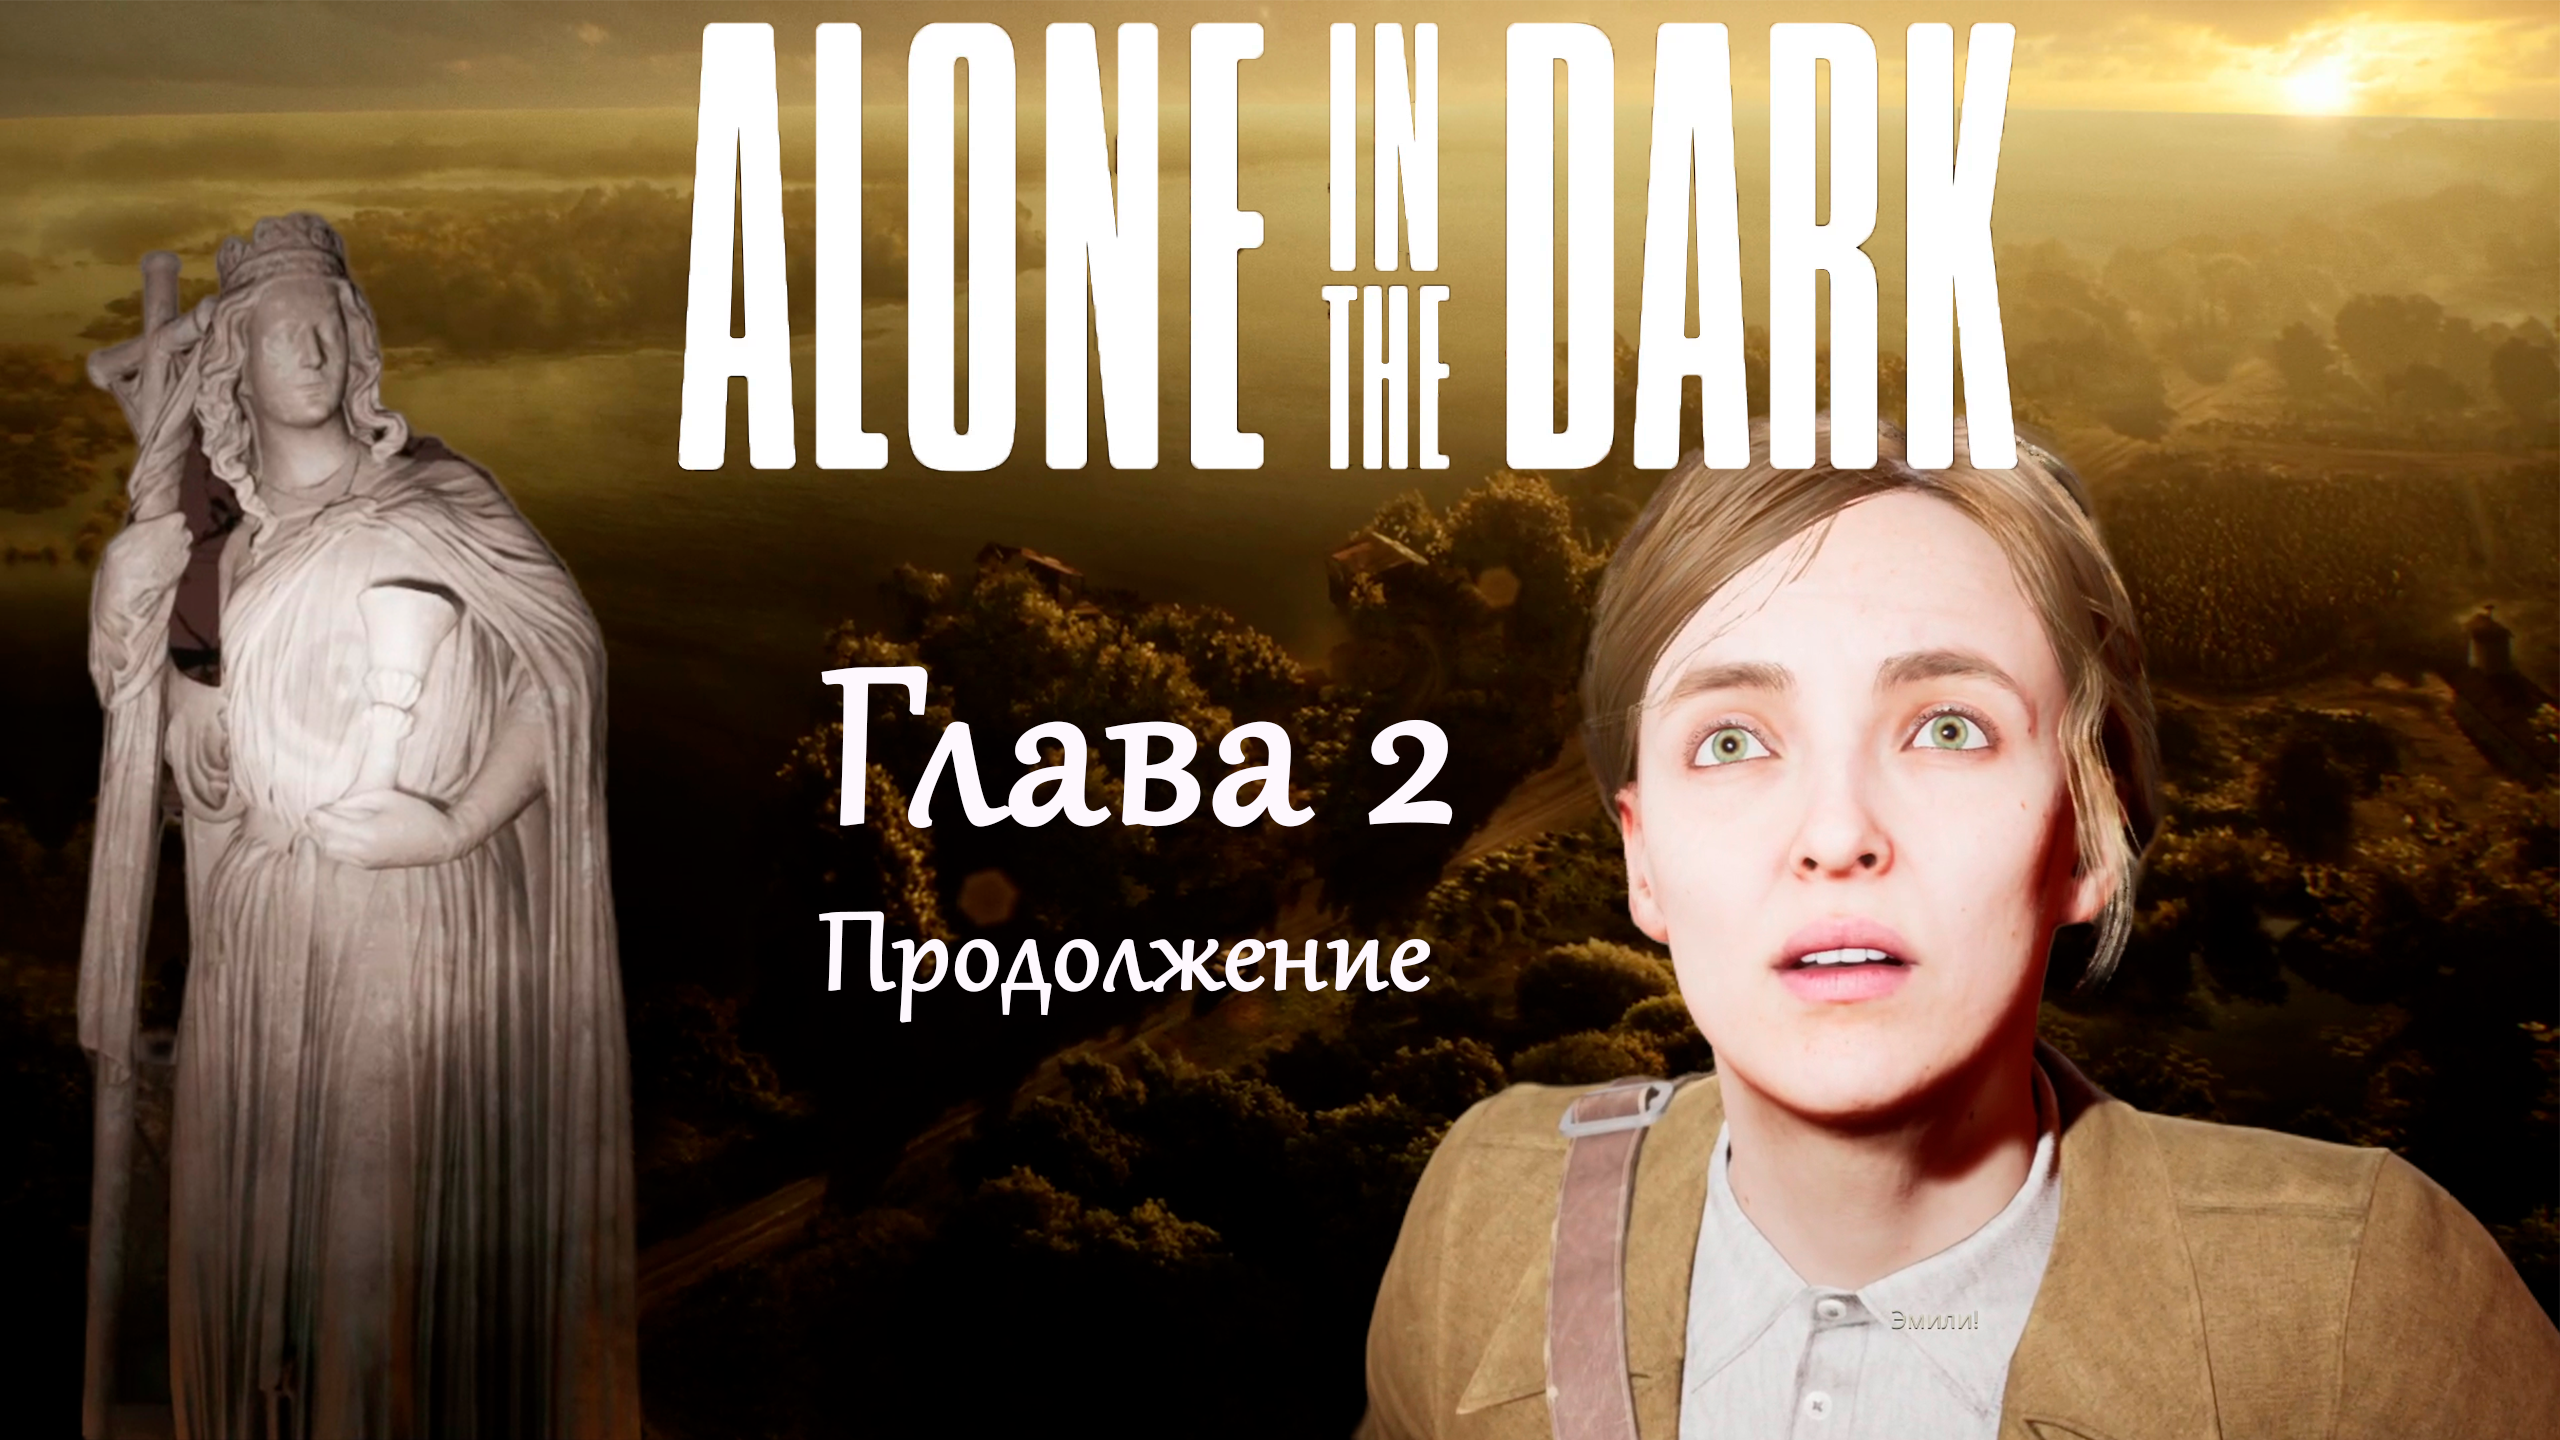 Продолжение прохождения главы 2, собираем мозаику и бродим по кладбищу ★ Alone in the dark